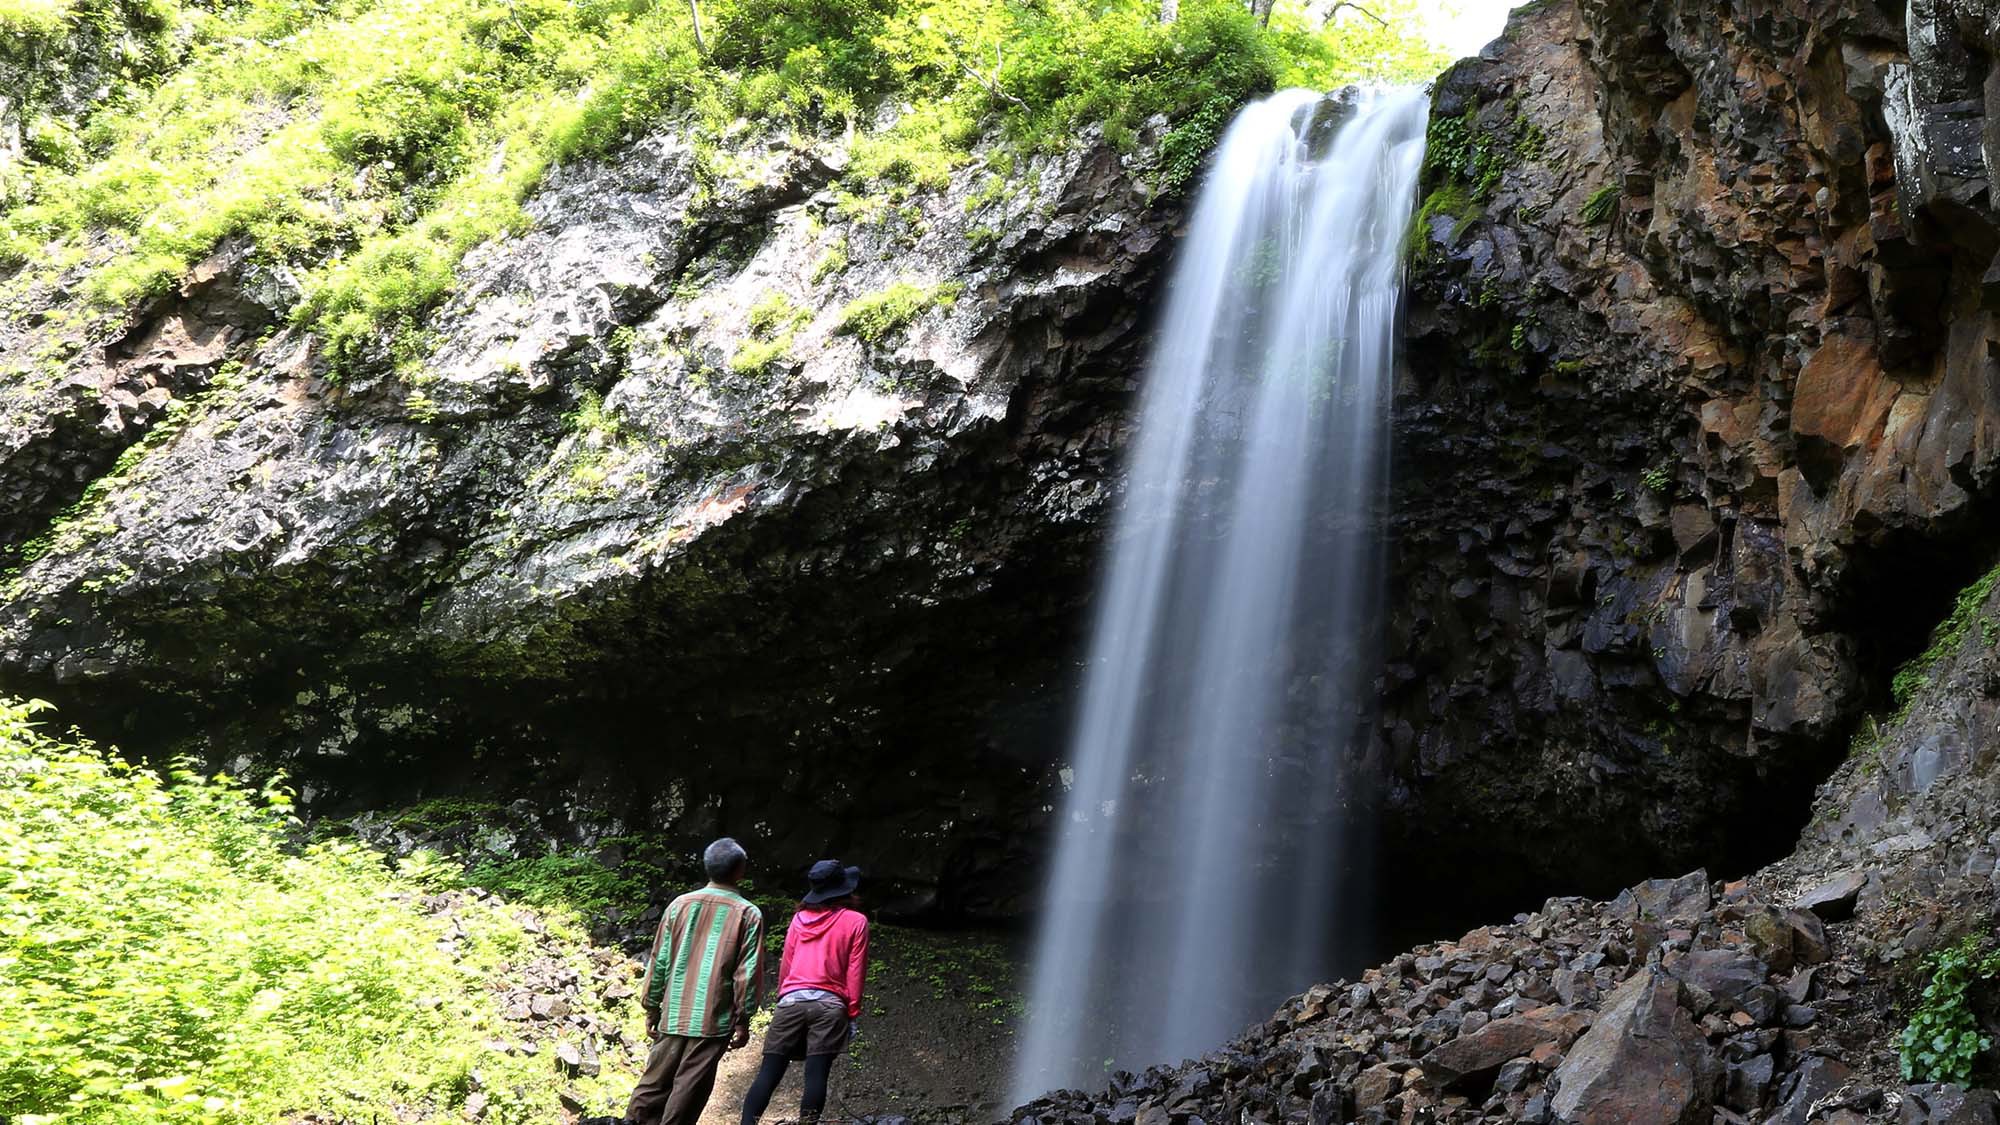 ・【クテクンの滝】滝の落差は約25m、中標津町にある最大落差の滝です